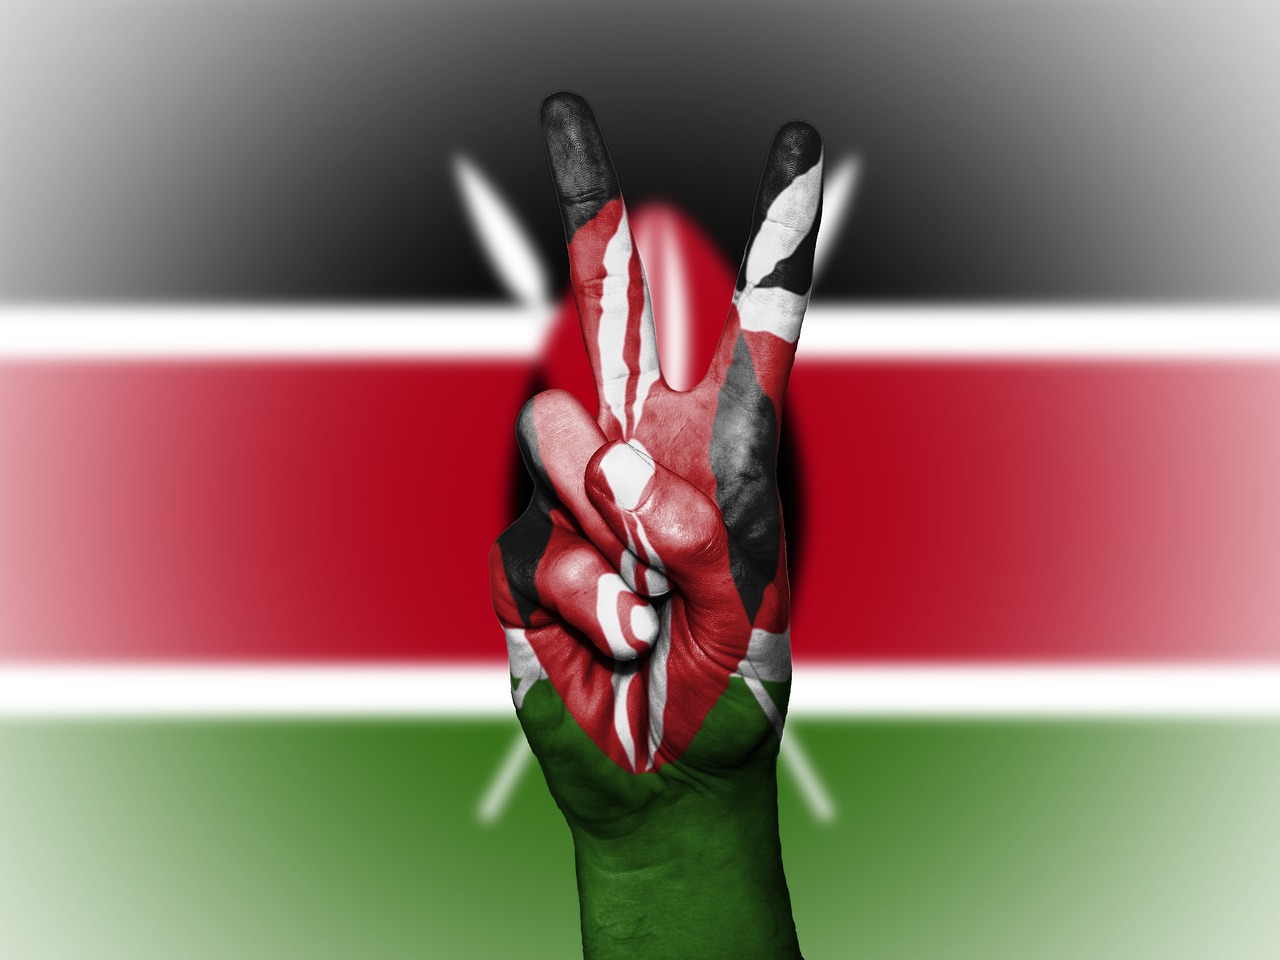 كينيا والرياضة: نظرة عامة